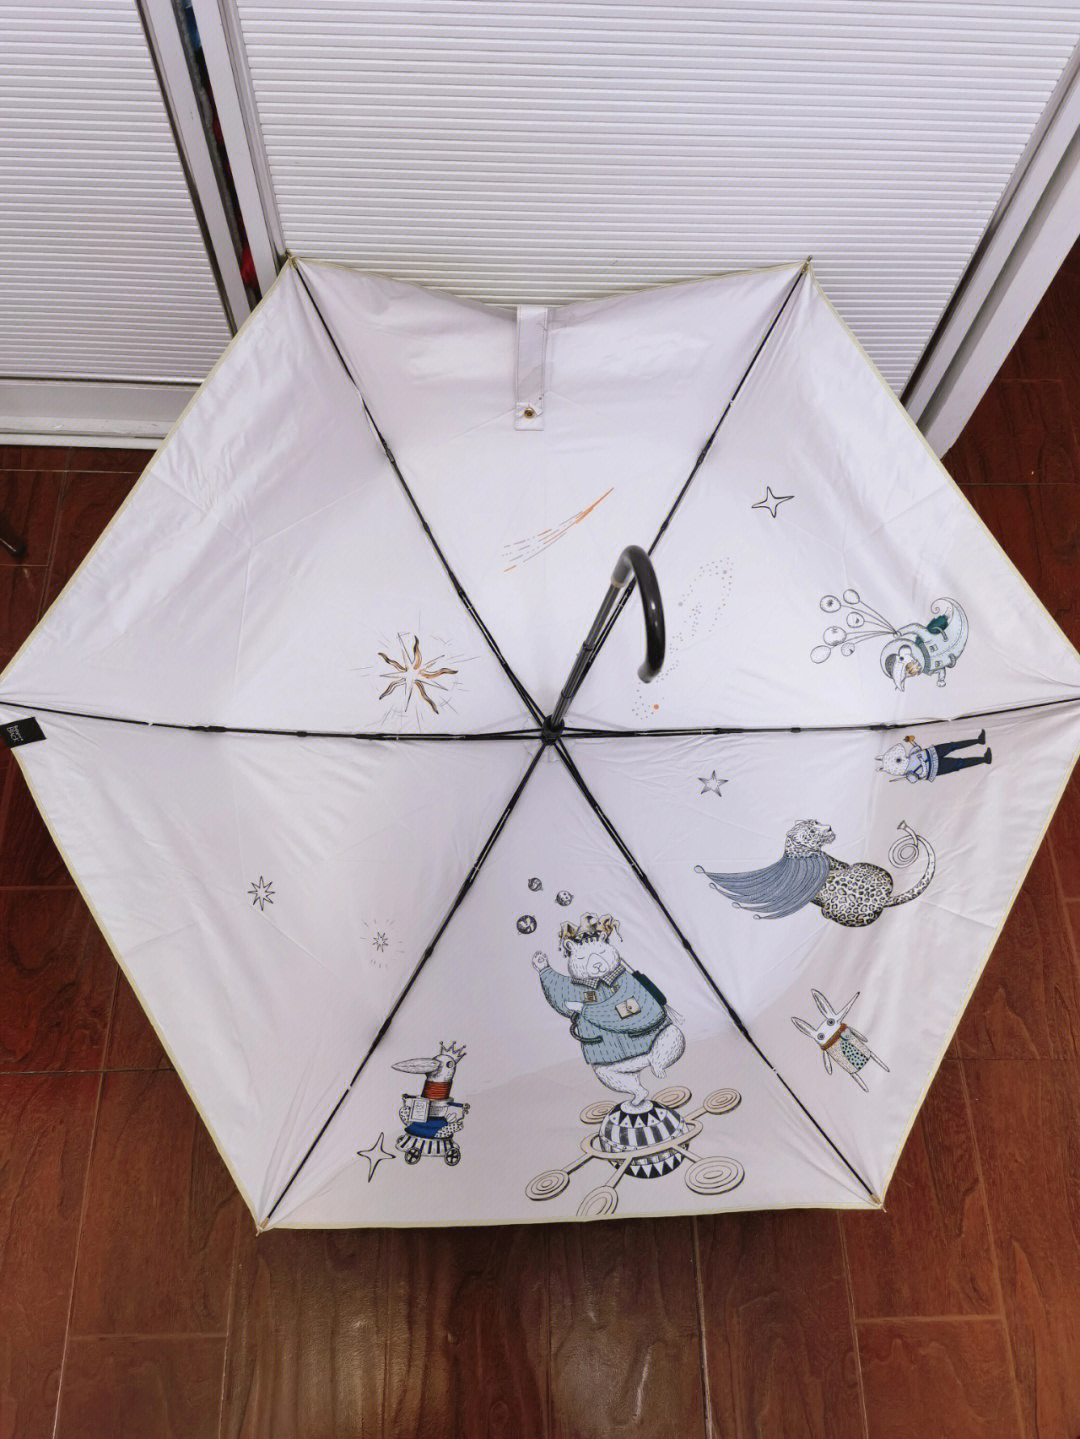 旧雨伞布做购物包详解图片